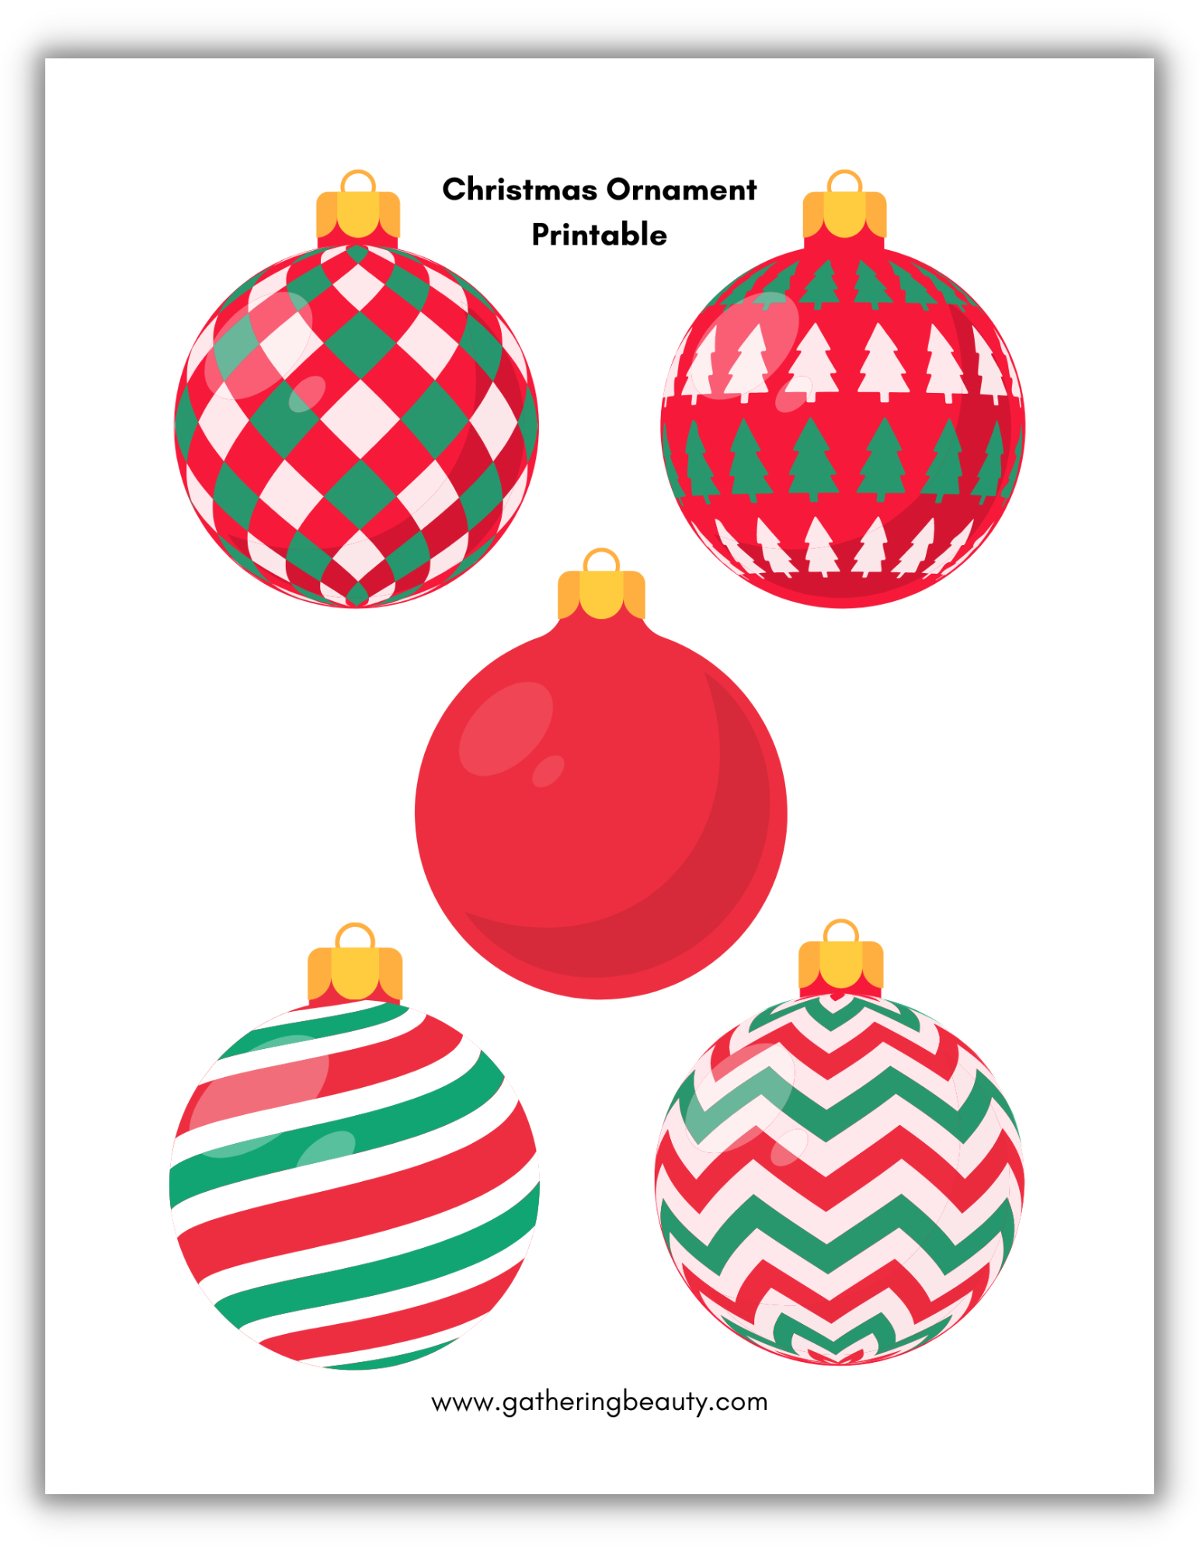 gøre det muligt for konstruktion Støv Christmas Ornament Printable — Gathering Beauty